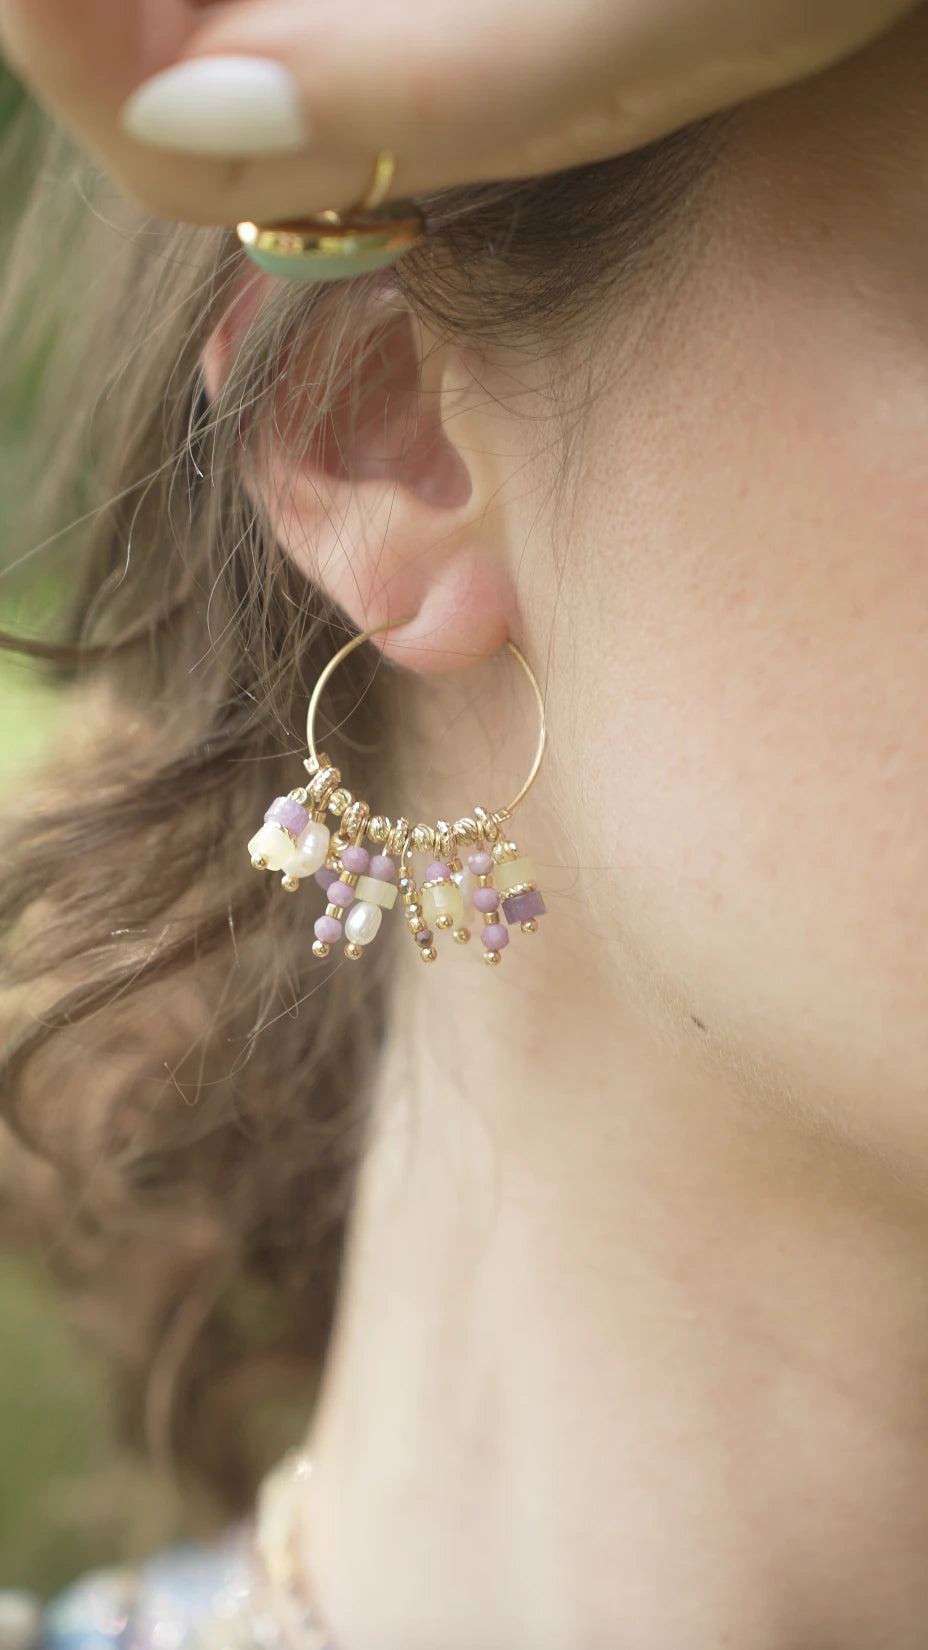 Boucles d'oreilles créoles fines ornées de petites perles et pierres semi-précieuses jaunes et violettes